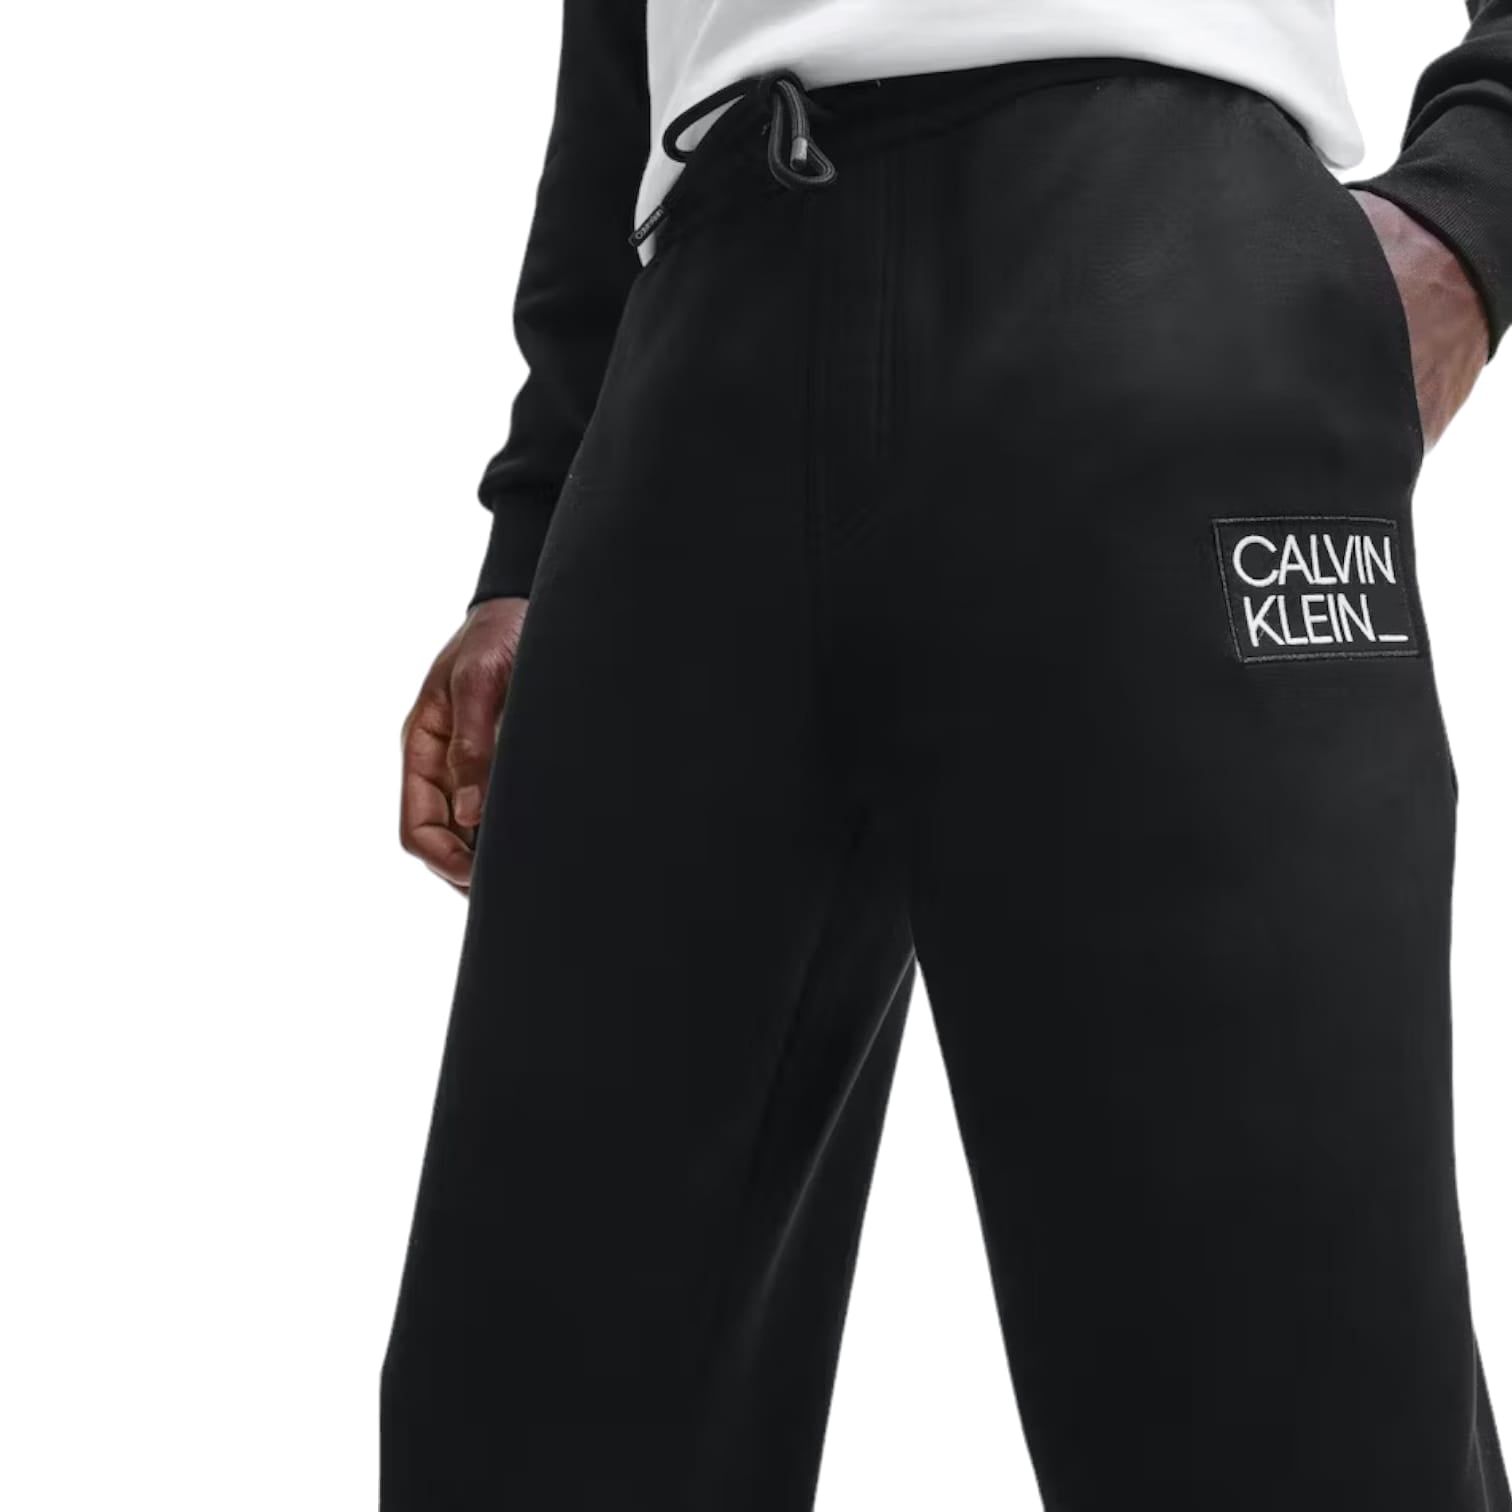 Calvin Klein Pantalone Tuta Uomo